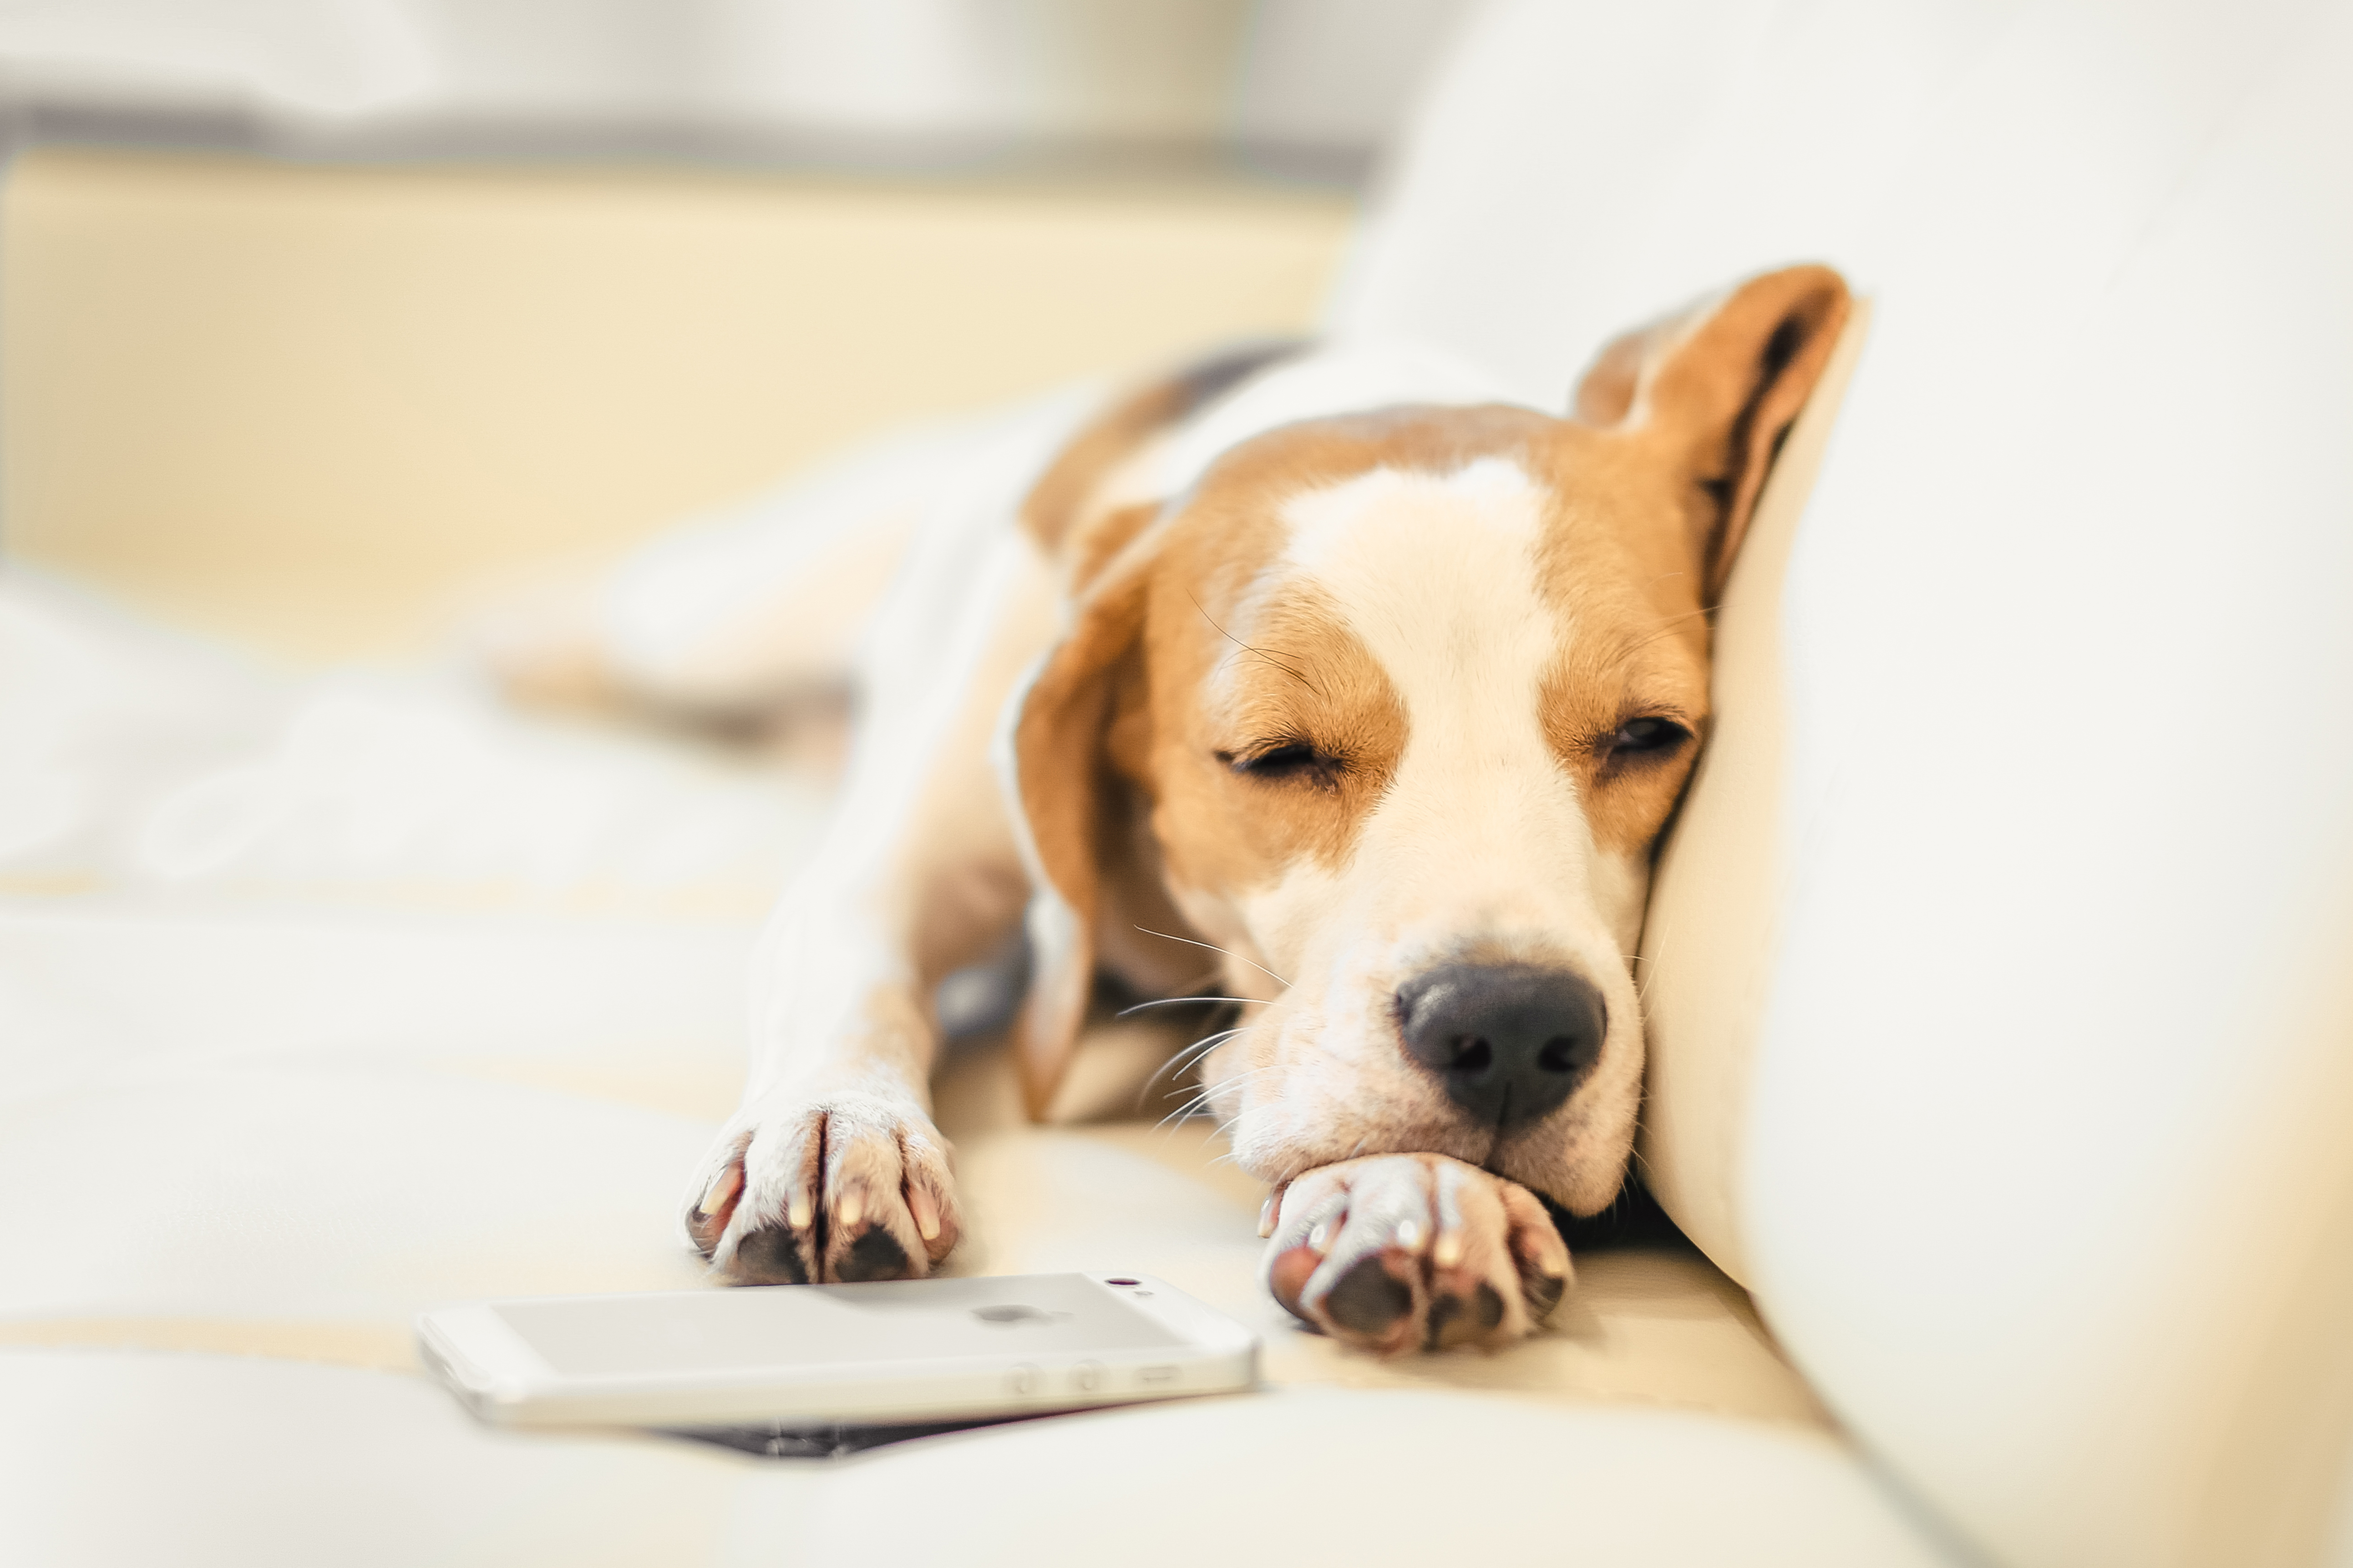 Descarga gratuita de fondo de pantalla para móvil de Animales, Perros, Perro, Bozal, Dormido, Beagle.